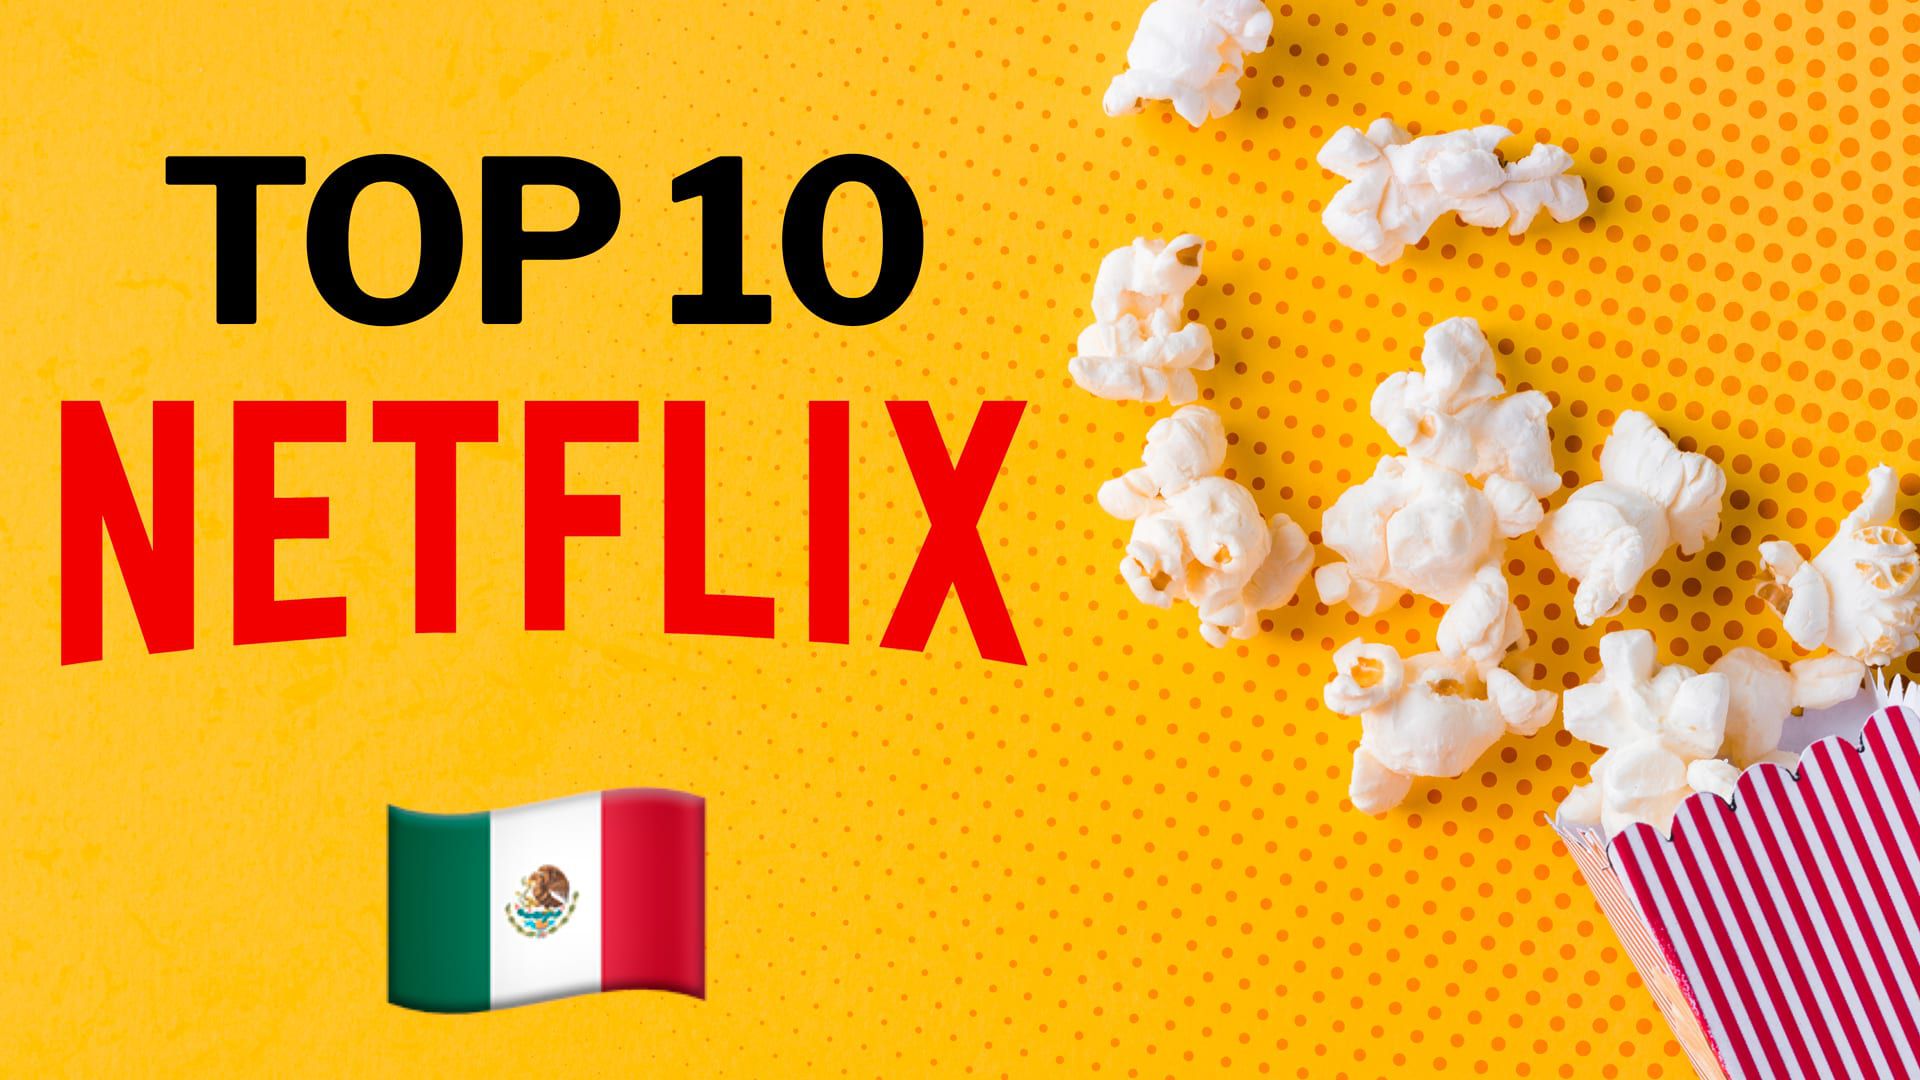 Aunque ha perdido suscriptores, Netflix sigue estando entre las plataformas favoritas del público mientras apuesta por sus grandes producciones. (Infobae)